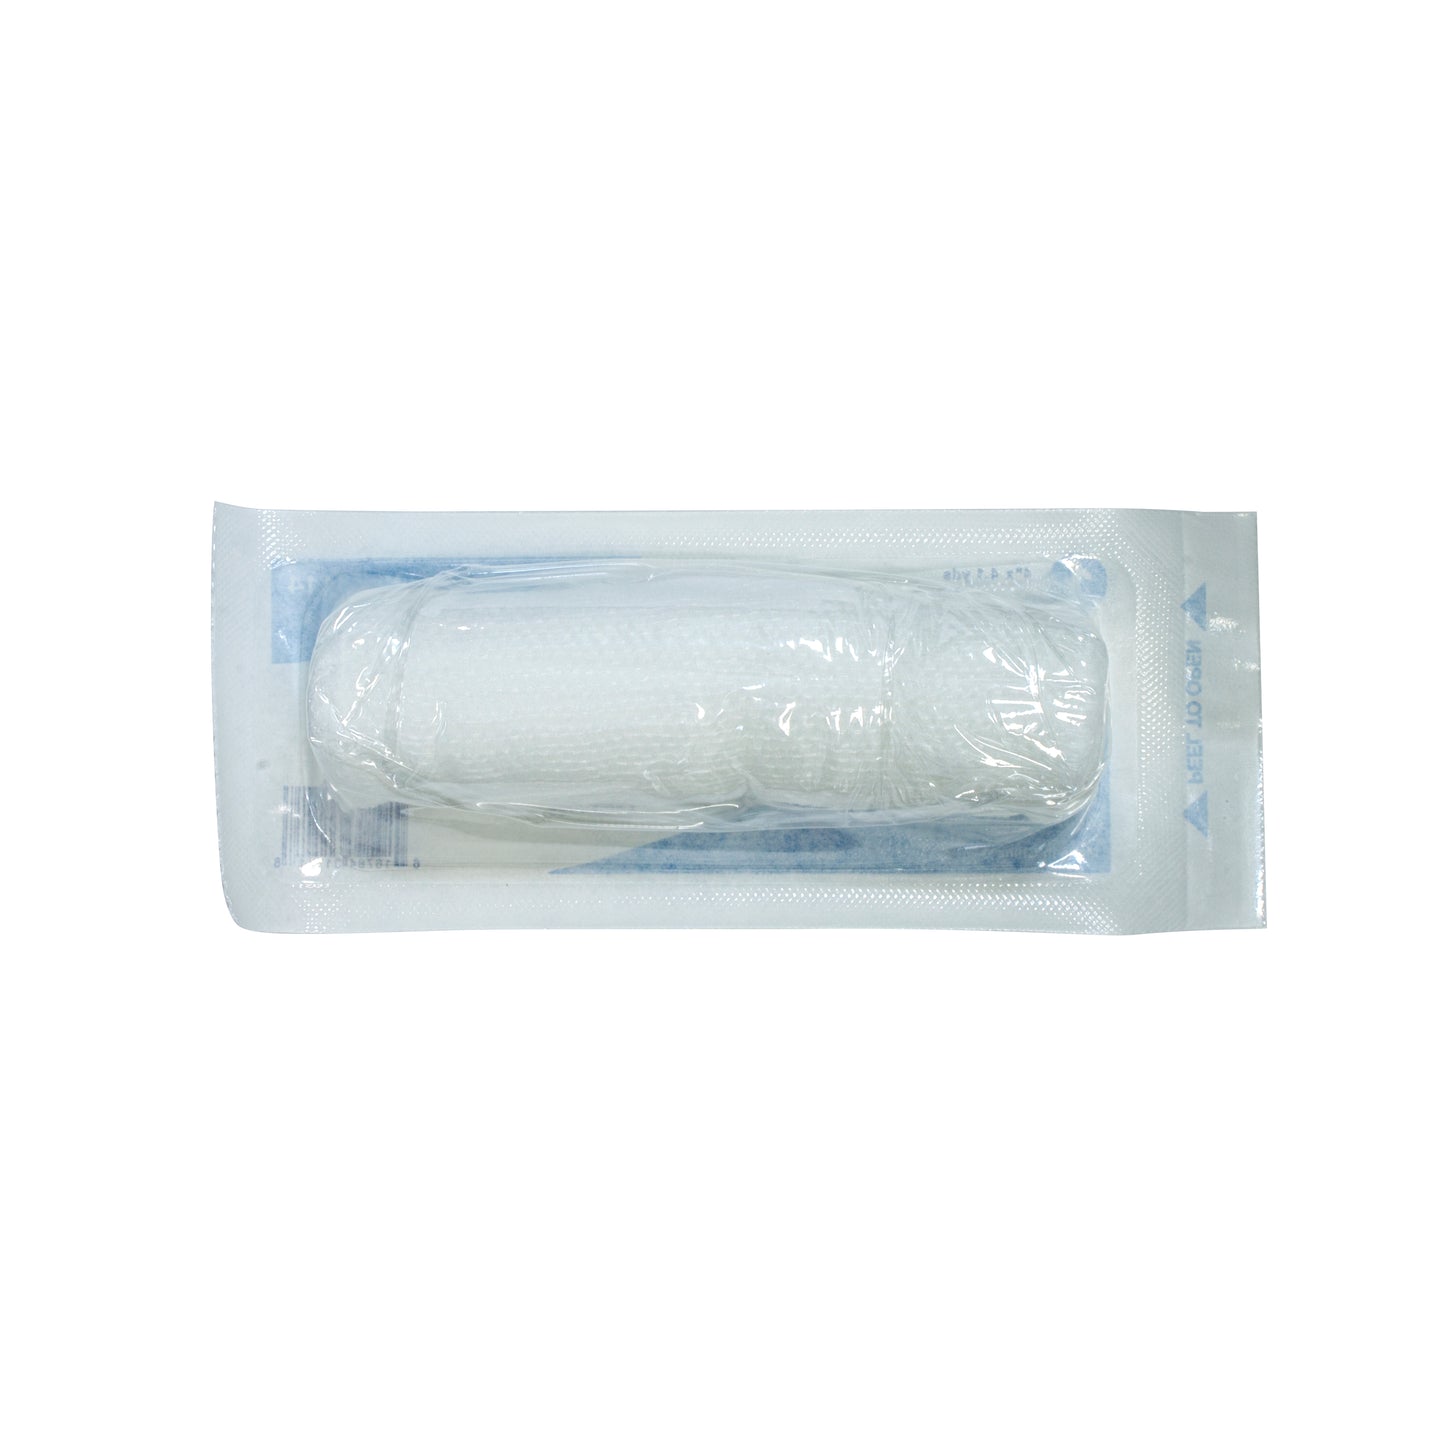 Dynarex® Sterile Conforming Bandage, 4 Inch x 4-1/10 Yard, 96 ct